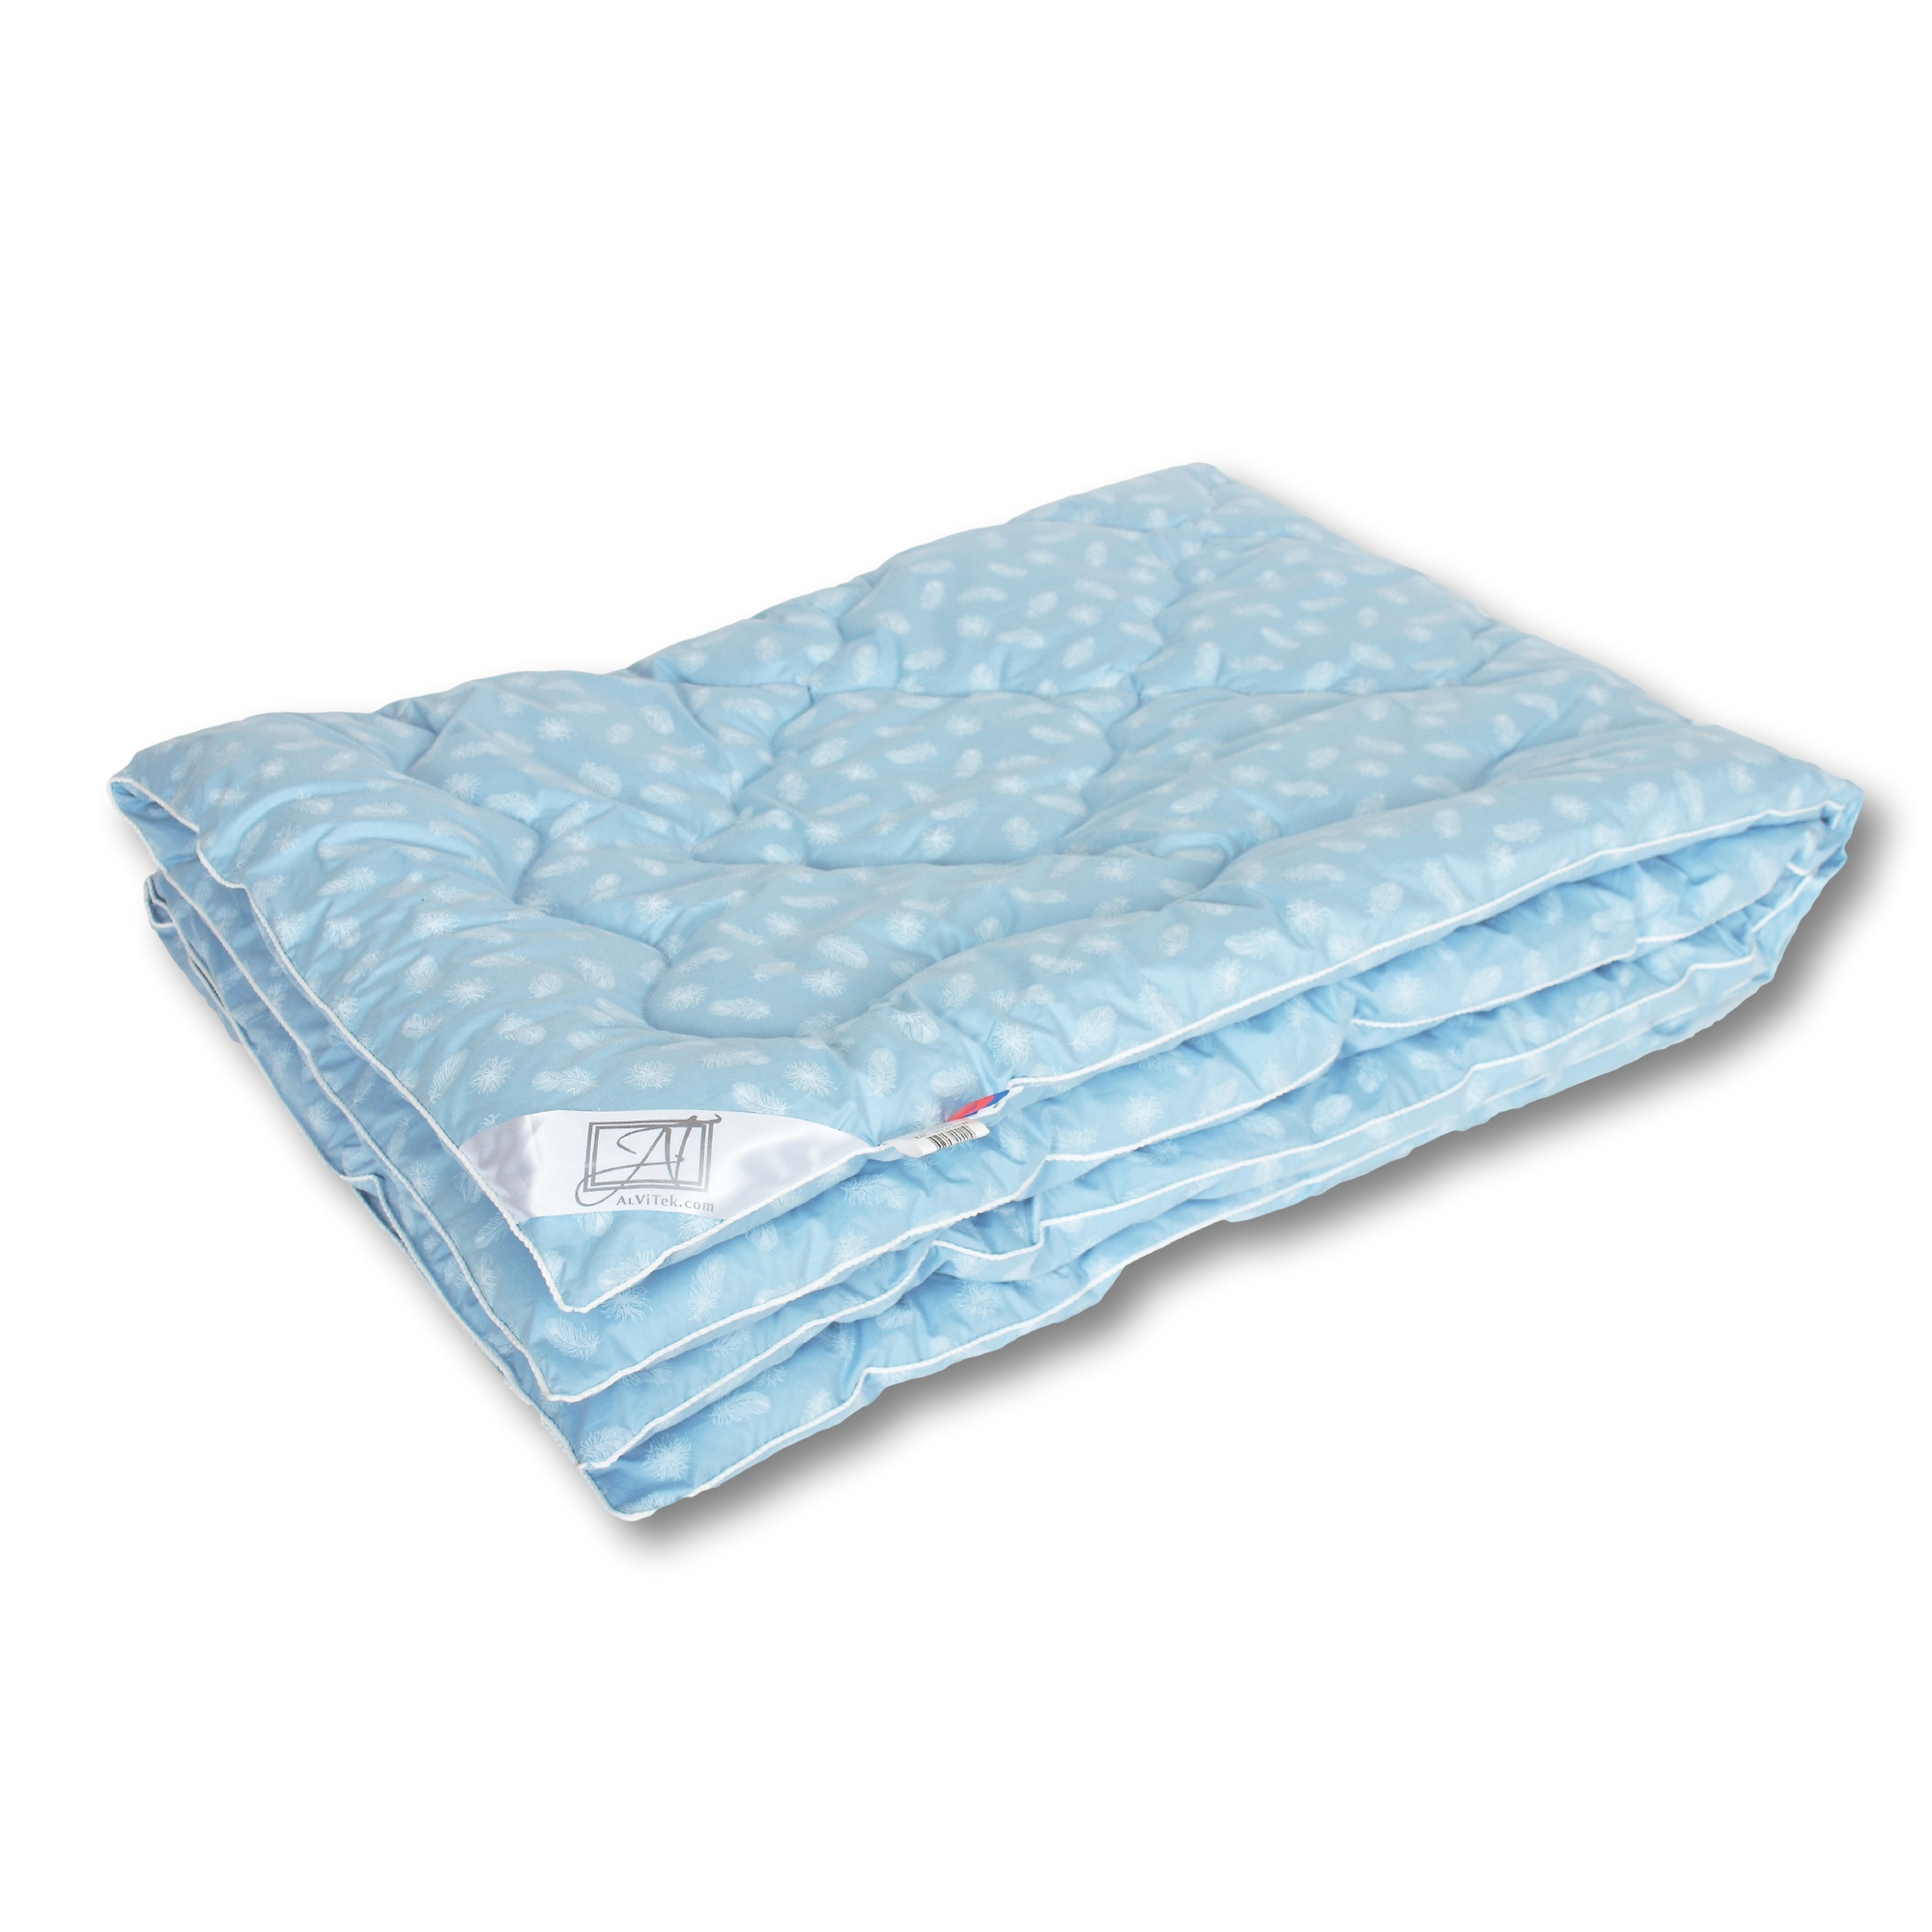 Одеяло Сhina Легкое (200x220 см), размер 200х220 см, цвет голубой iff35248 Одеяло Сhina Легкое (200x220 см) - фото 1